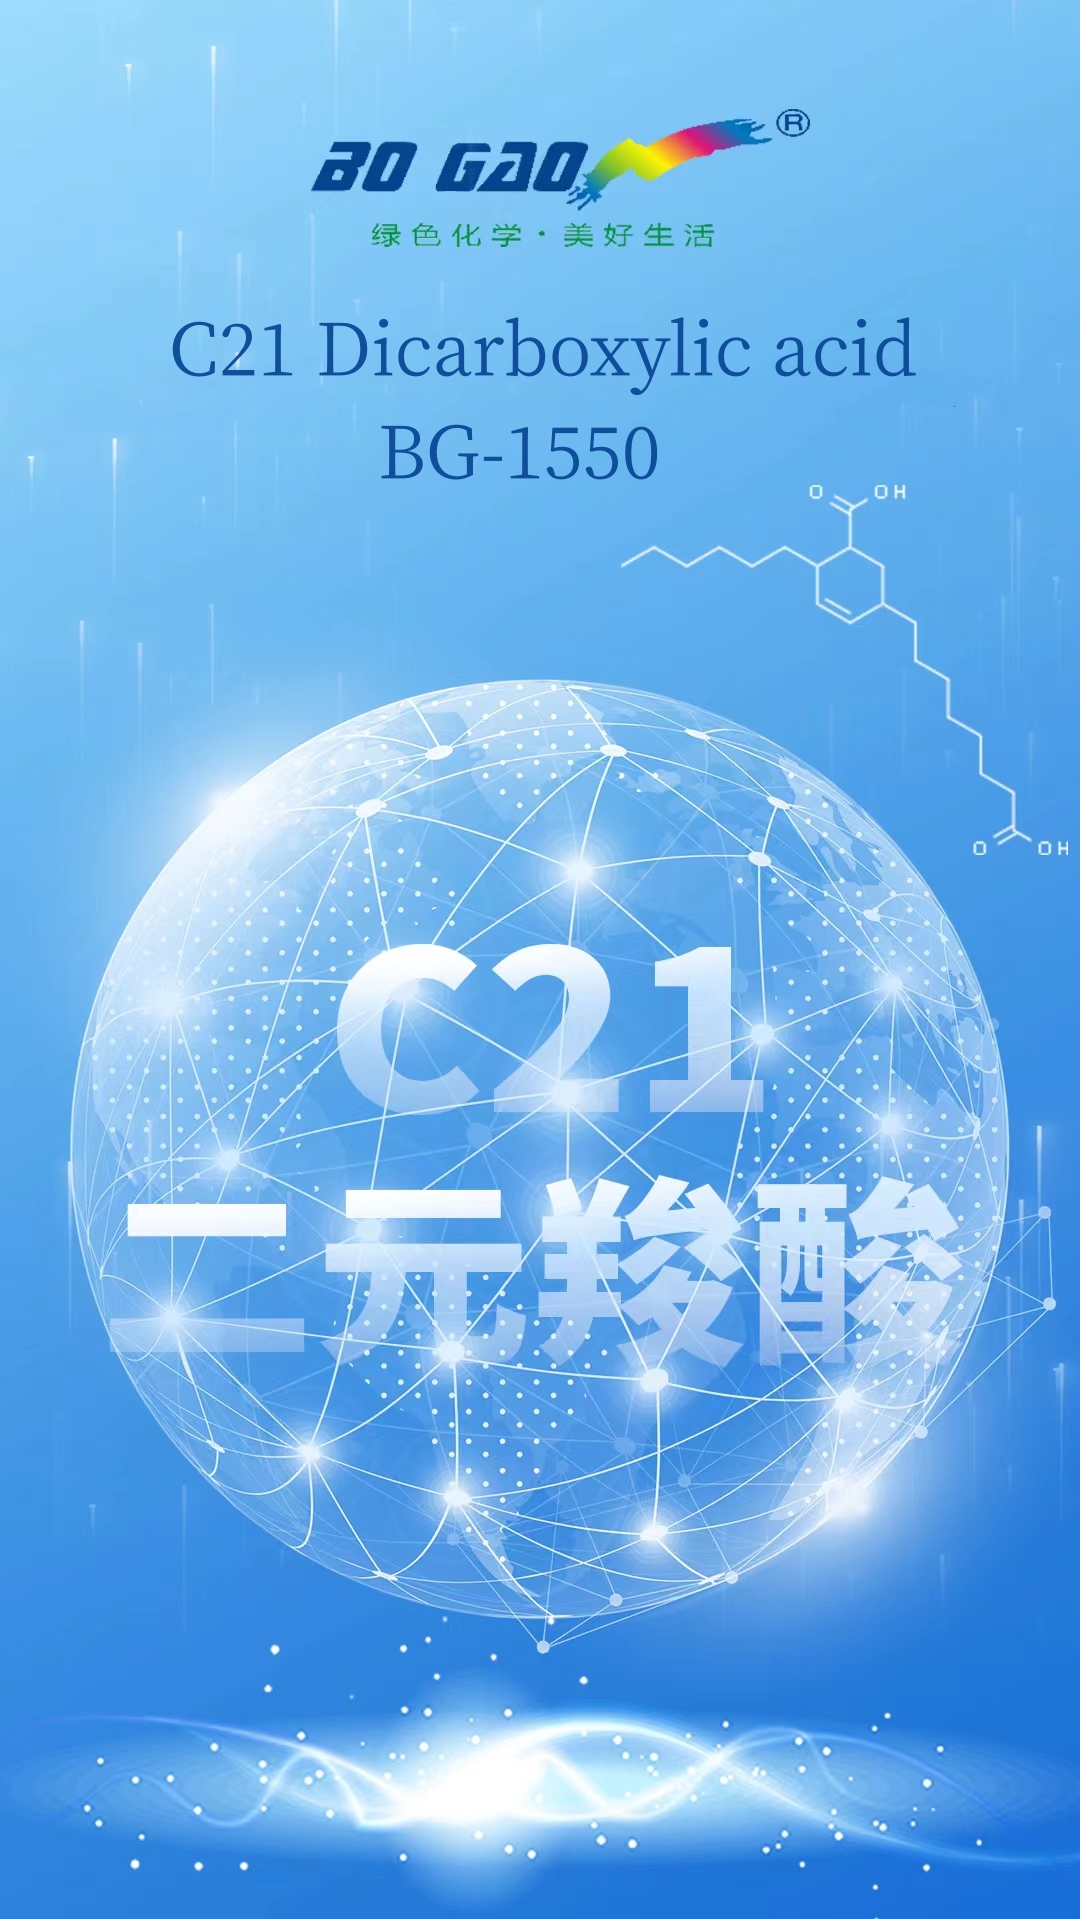 BoGao олон үйлдэлт хэрэглээ-C21 дикарбоксилын хүчил/BG-1550-г эхлүүлэв.